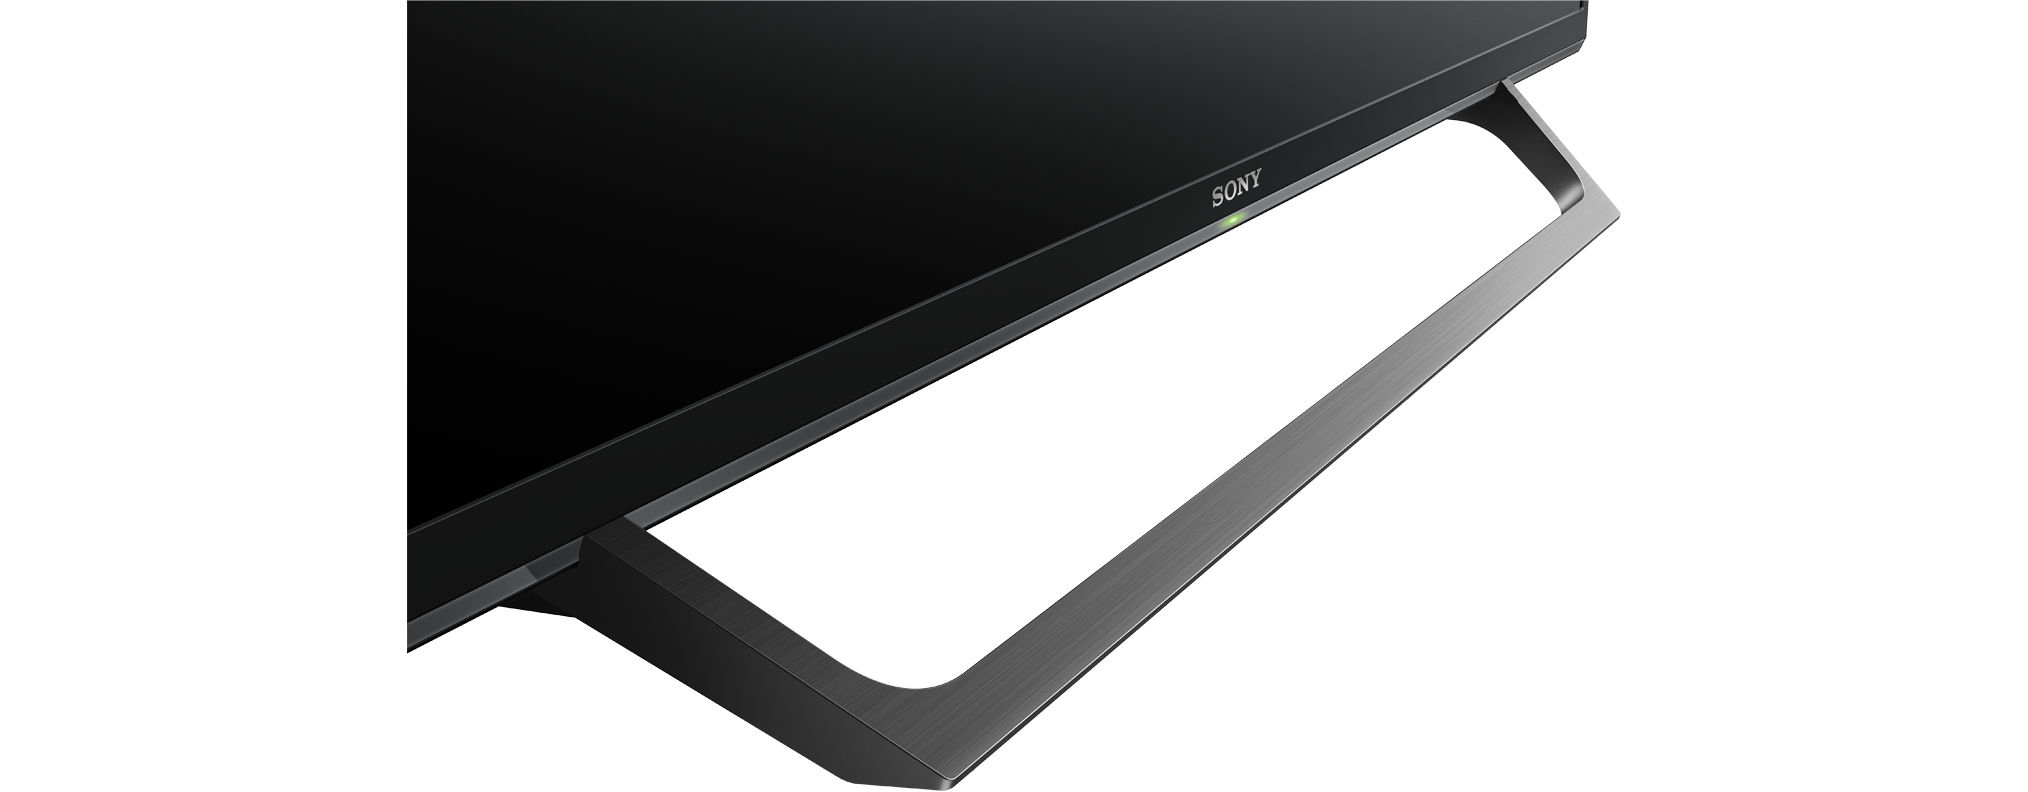 SONY KDL-32W6605 LED SMART TV, 80 HD-ready, Linux) 32 (Flat, Zoll TV / cm